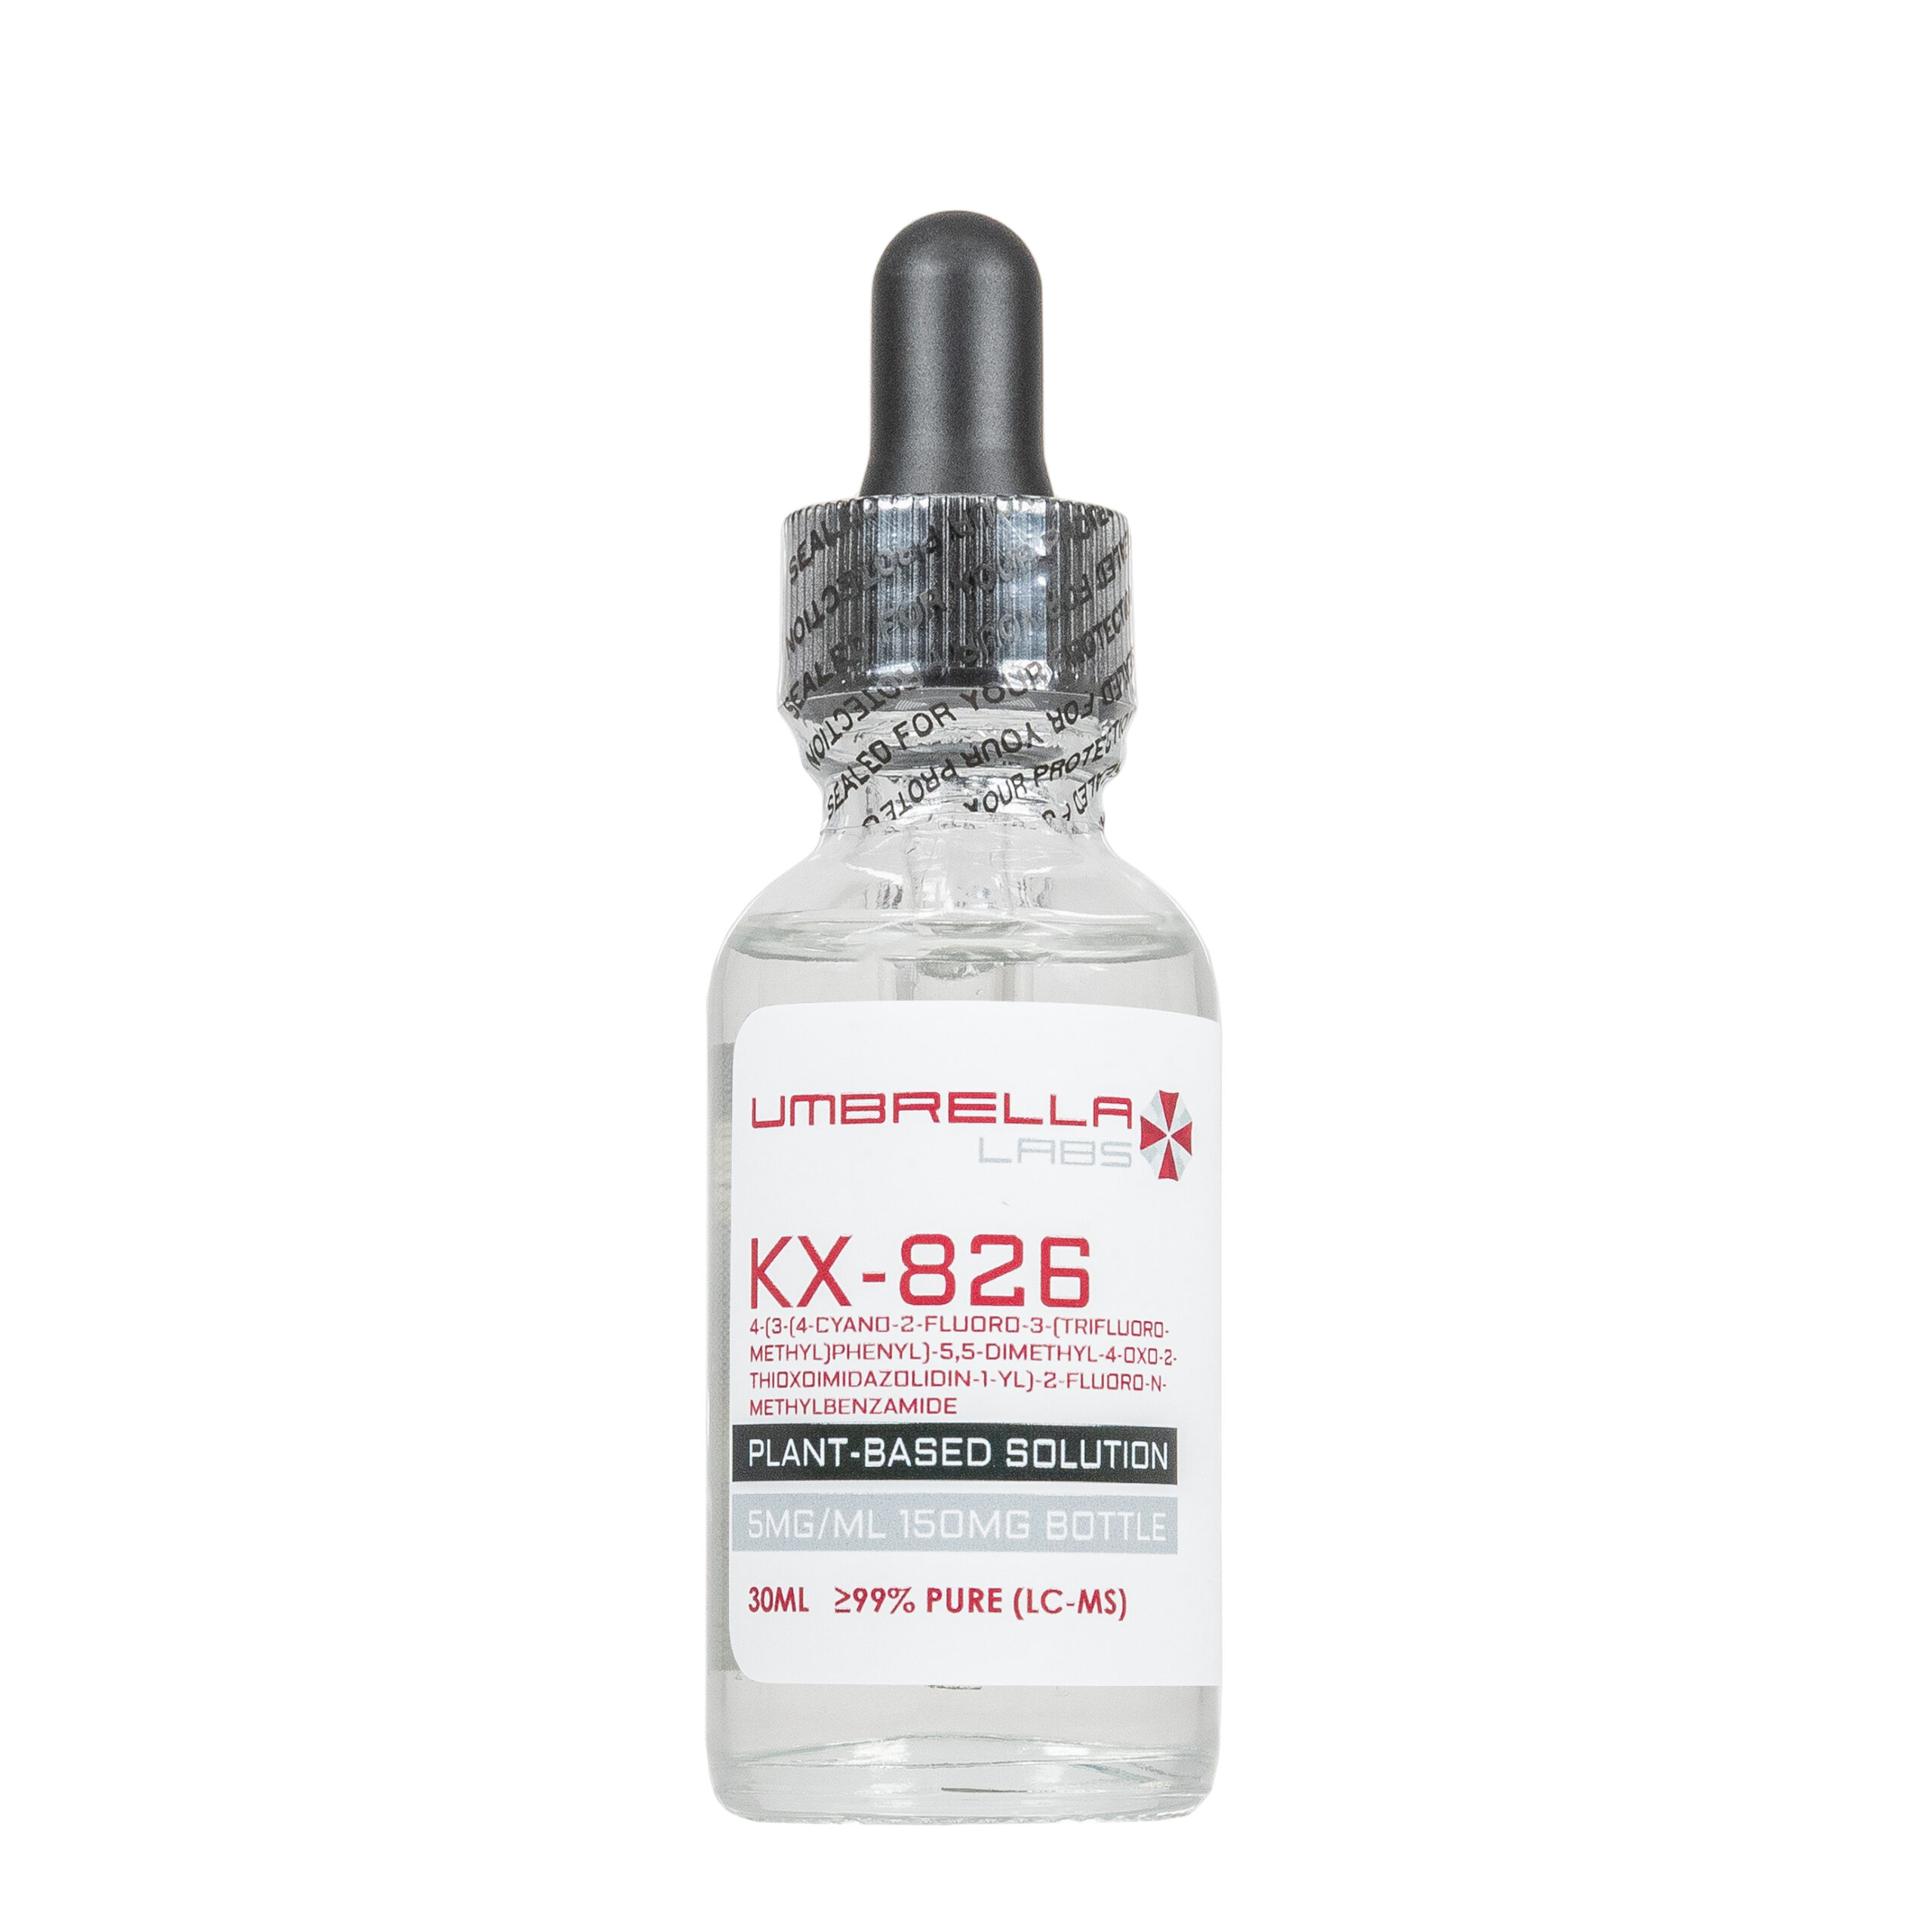 kx 826 (500 mg)